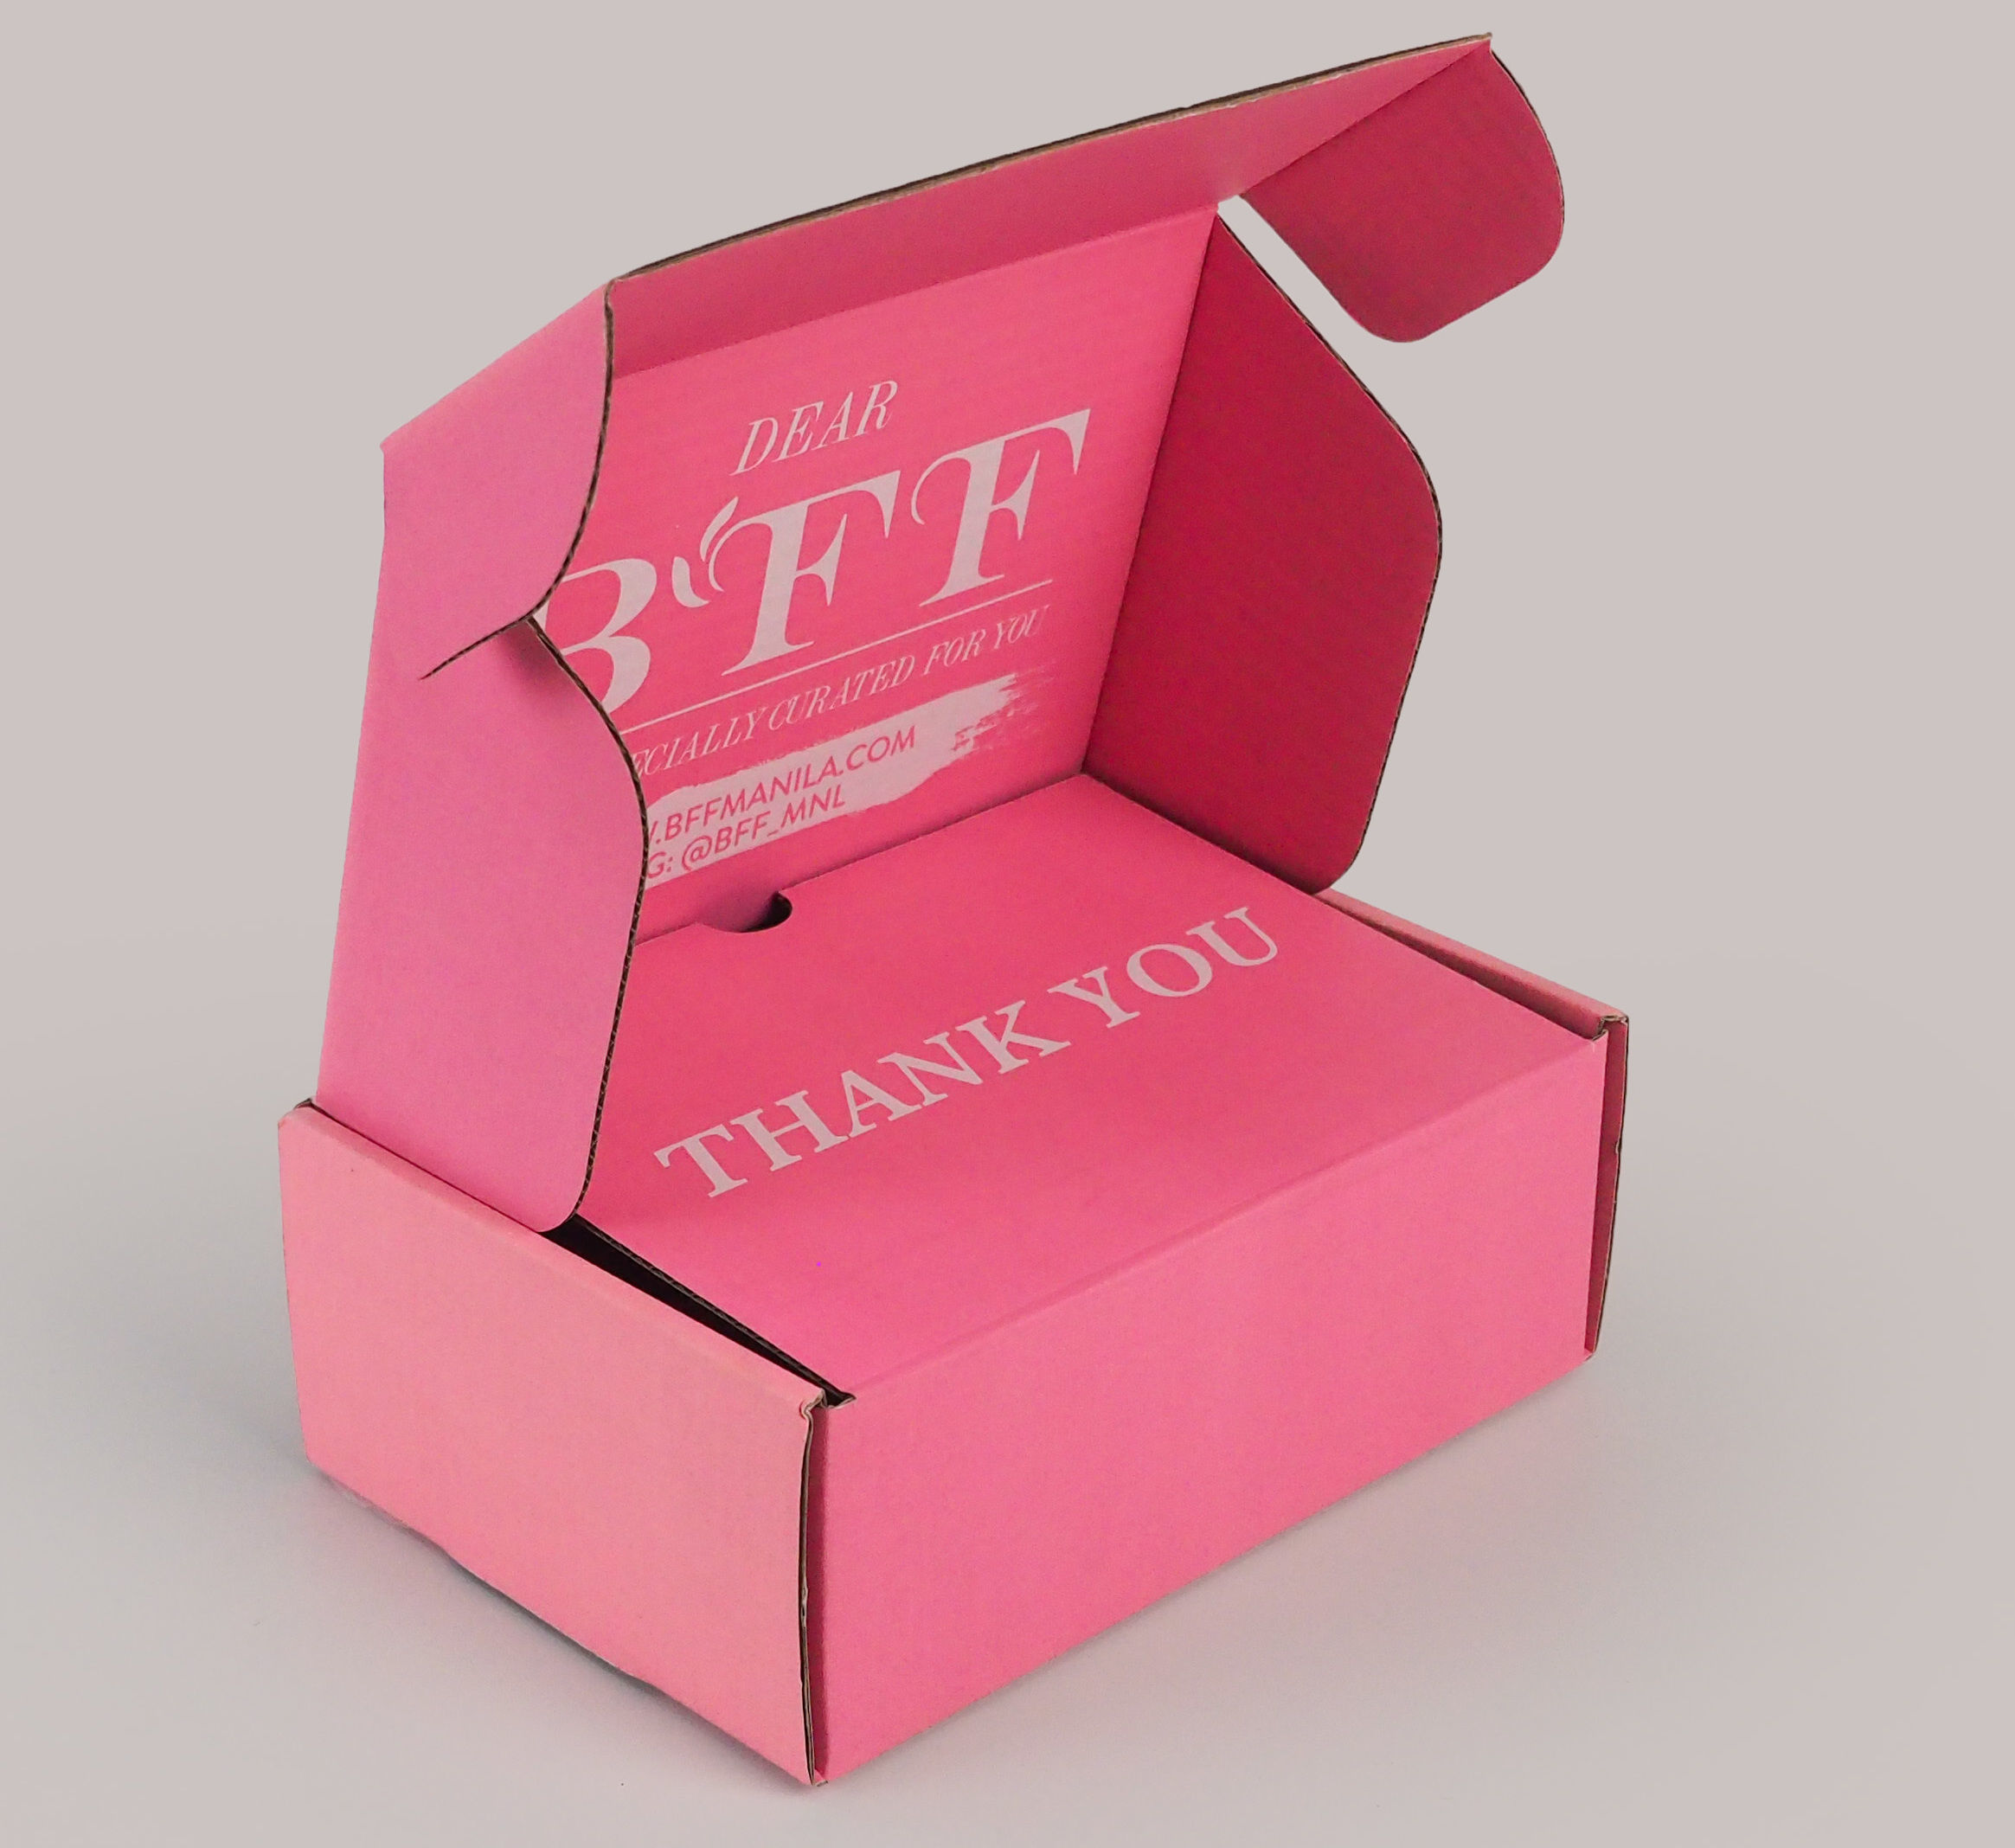 กล่องไปรษณีย์หูช้าง-มีฝาด้าใน  Brand BFF,กล่องไปรษณีย์top-tier luxury beauty curation